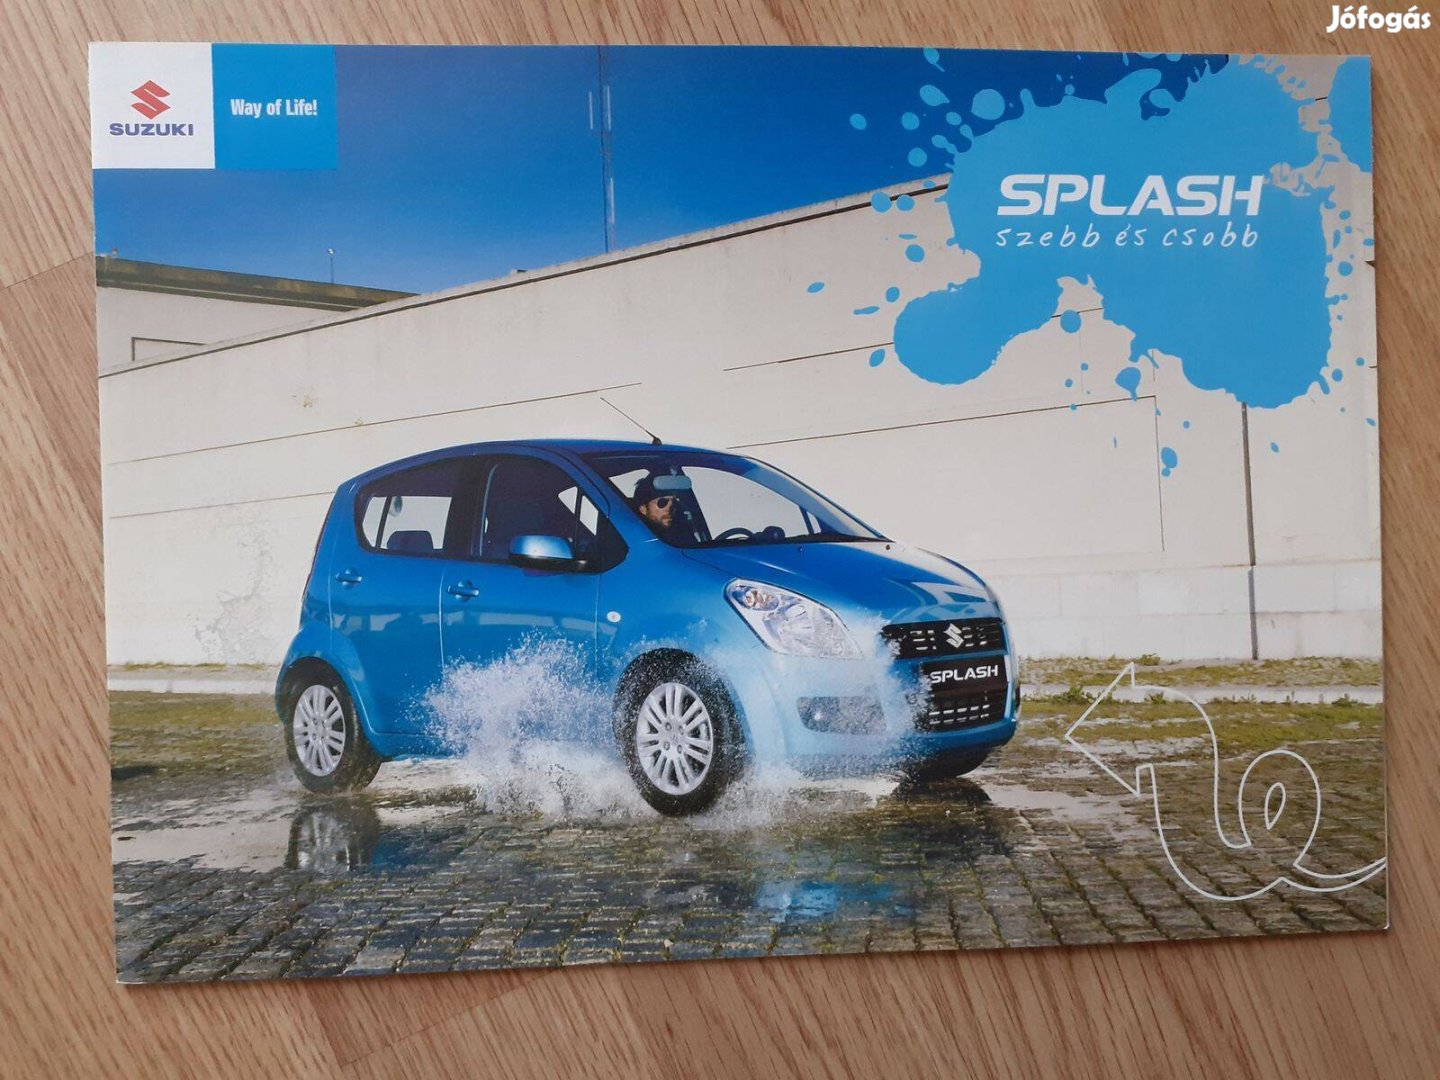 Suzuki Splash prospektus - magyar nyelvű